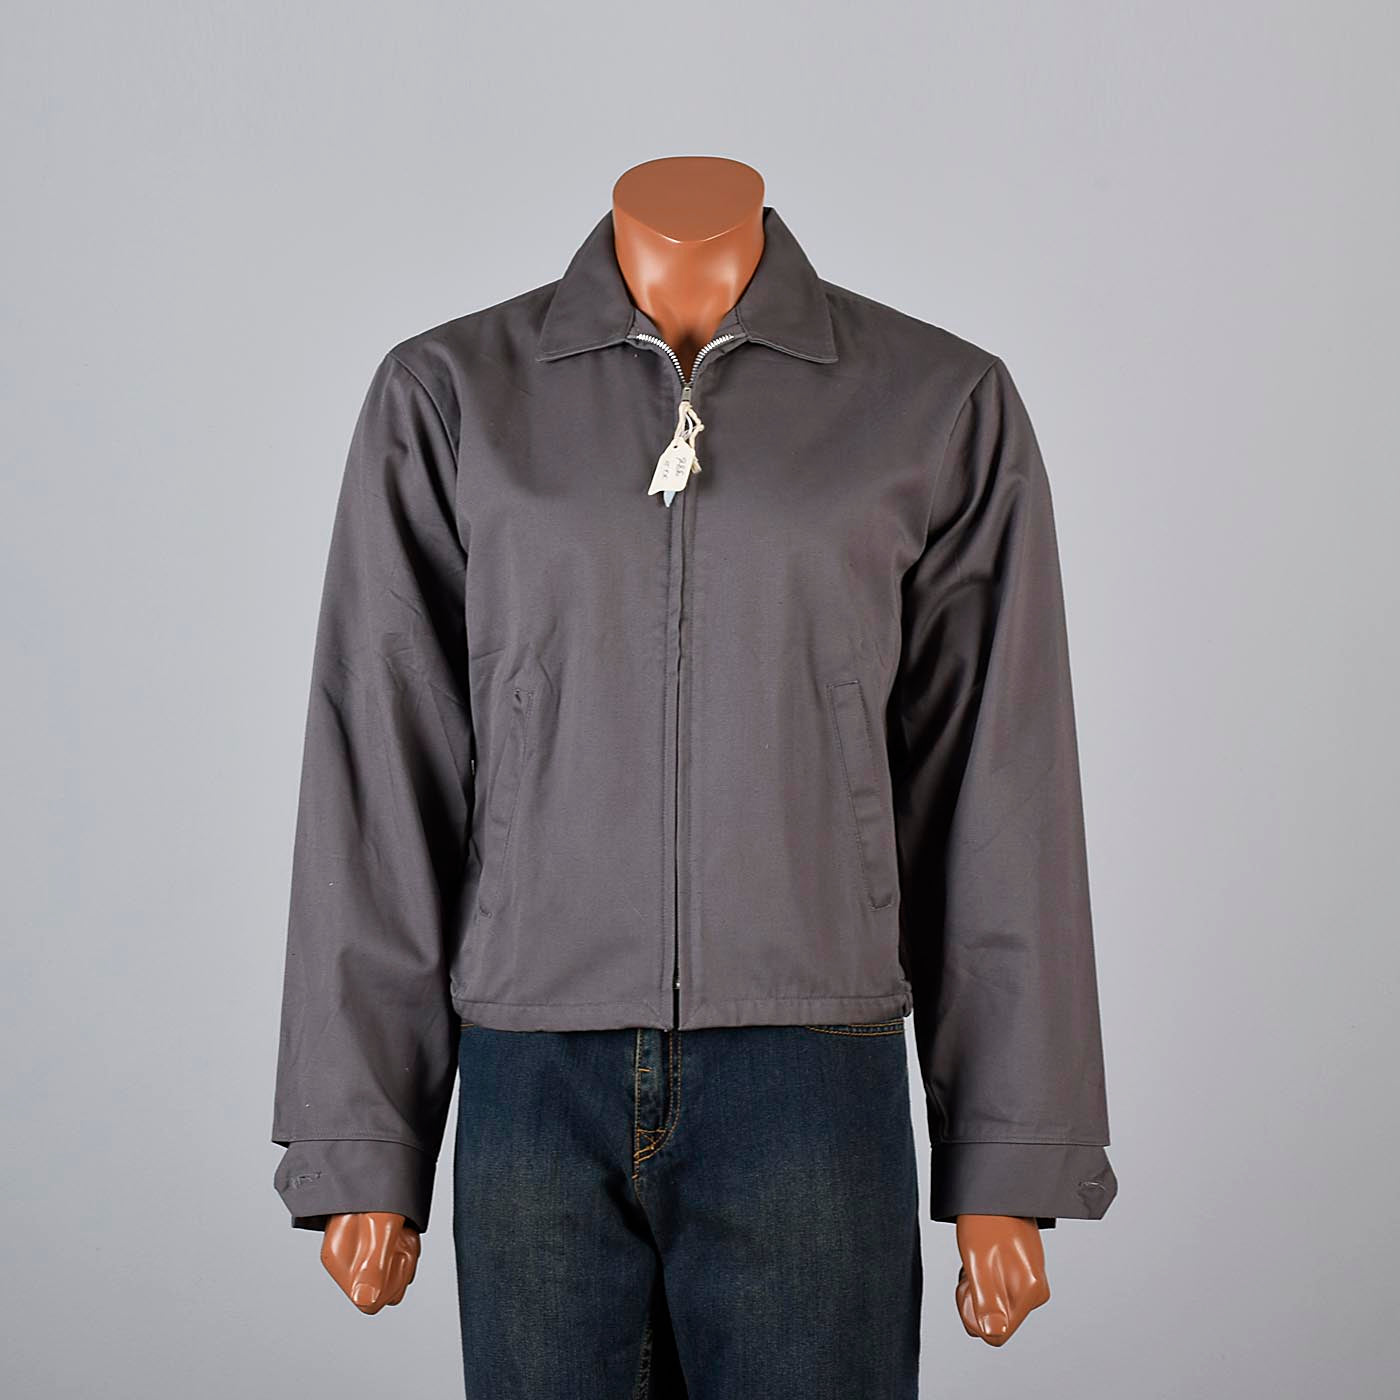 Deadstock 1950s Men's Big Yank Sanforized Blue Work Wear Zip Jacket